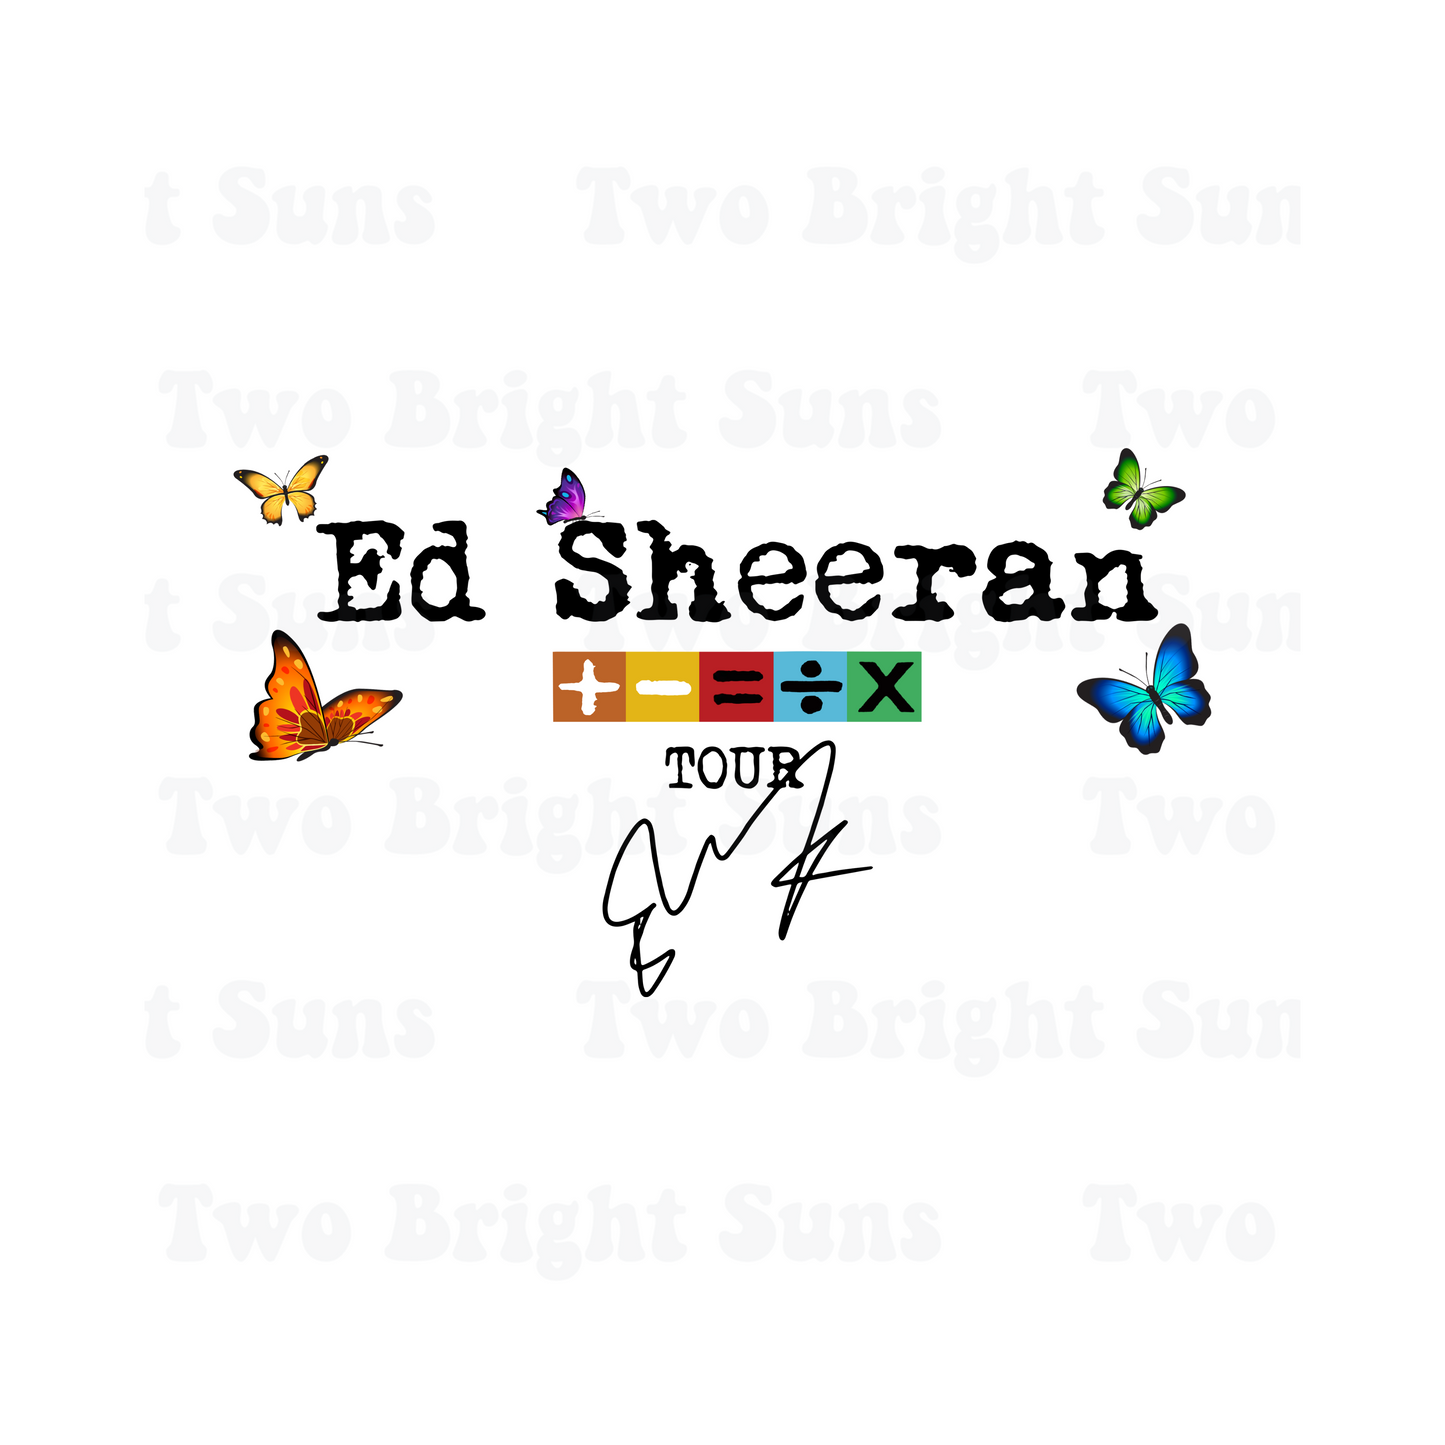 Ed Sheeran Tour with Butterflies